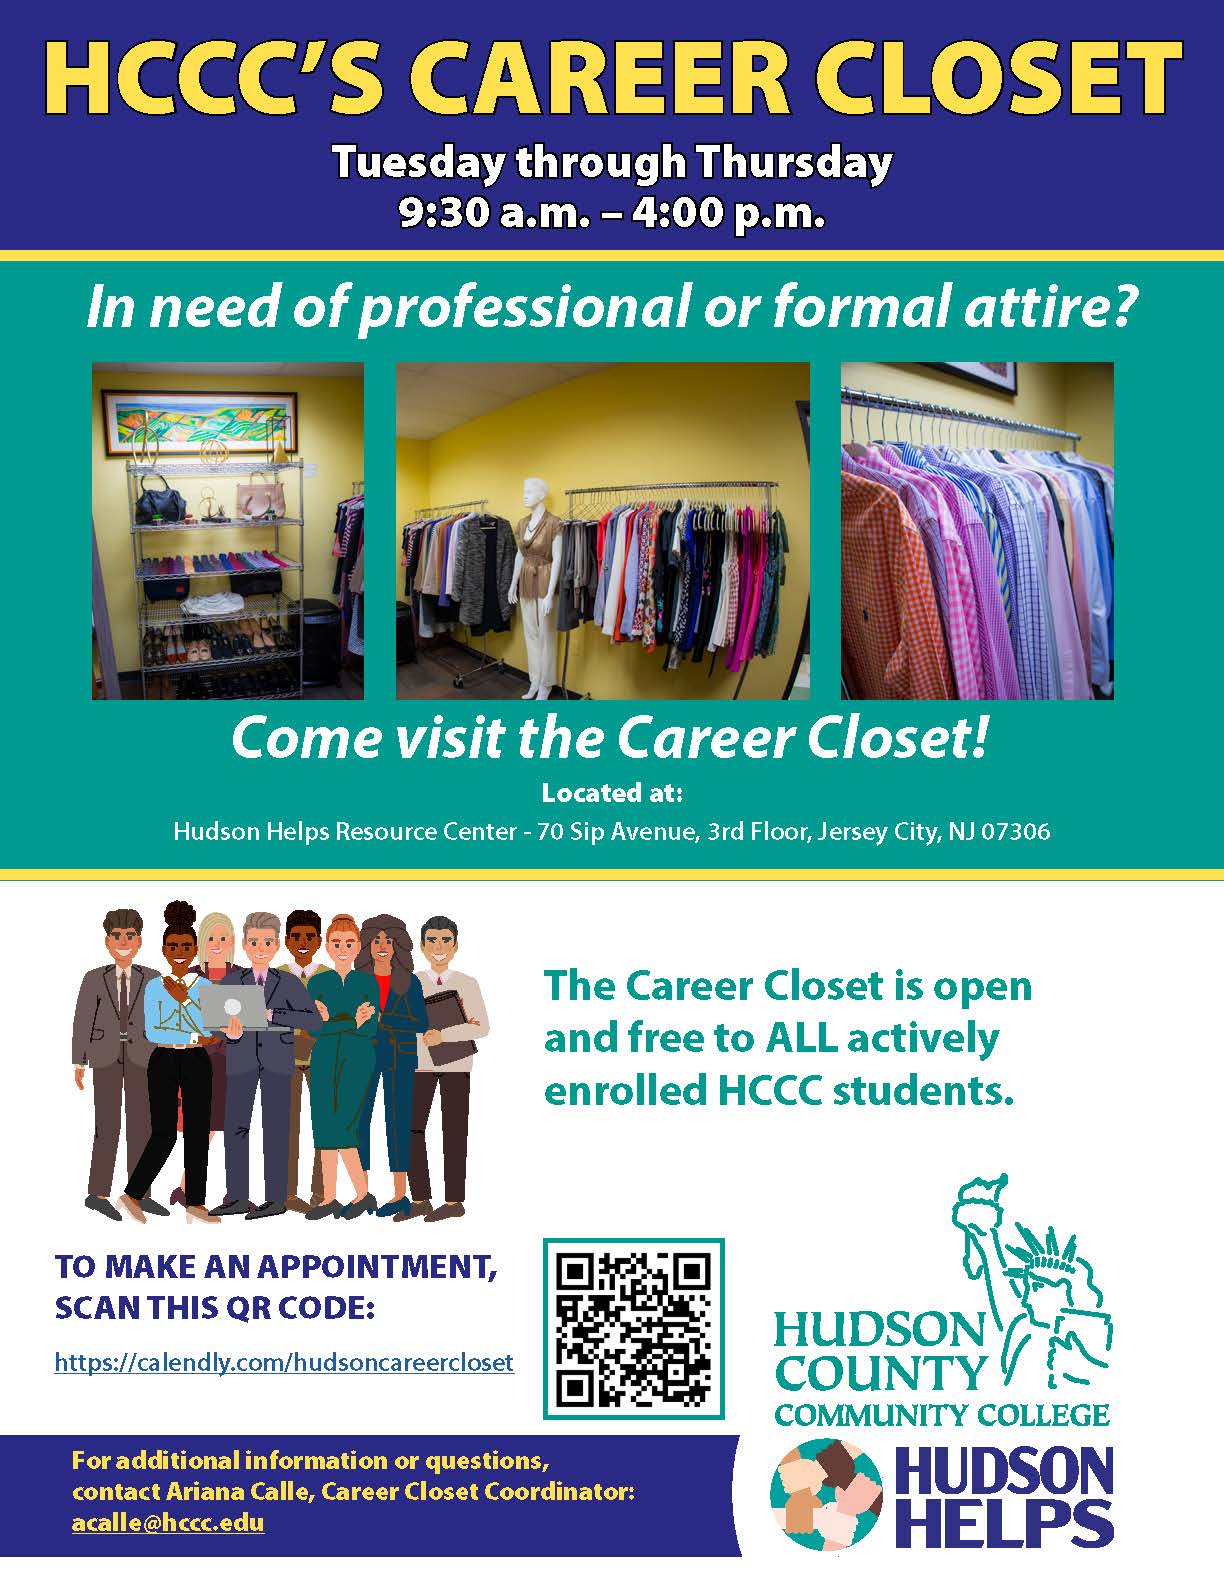 Career Closet Hours Tuesday-Thursday 9:30AM-4:00PM